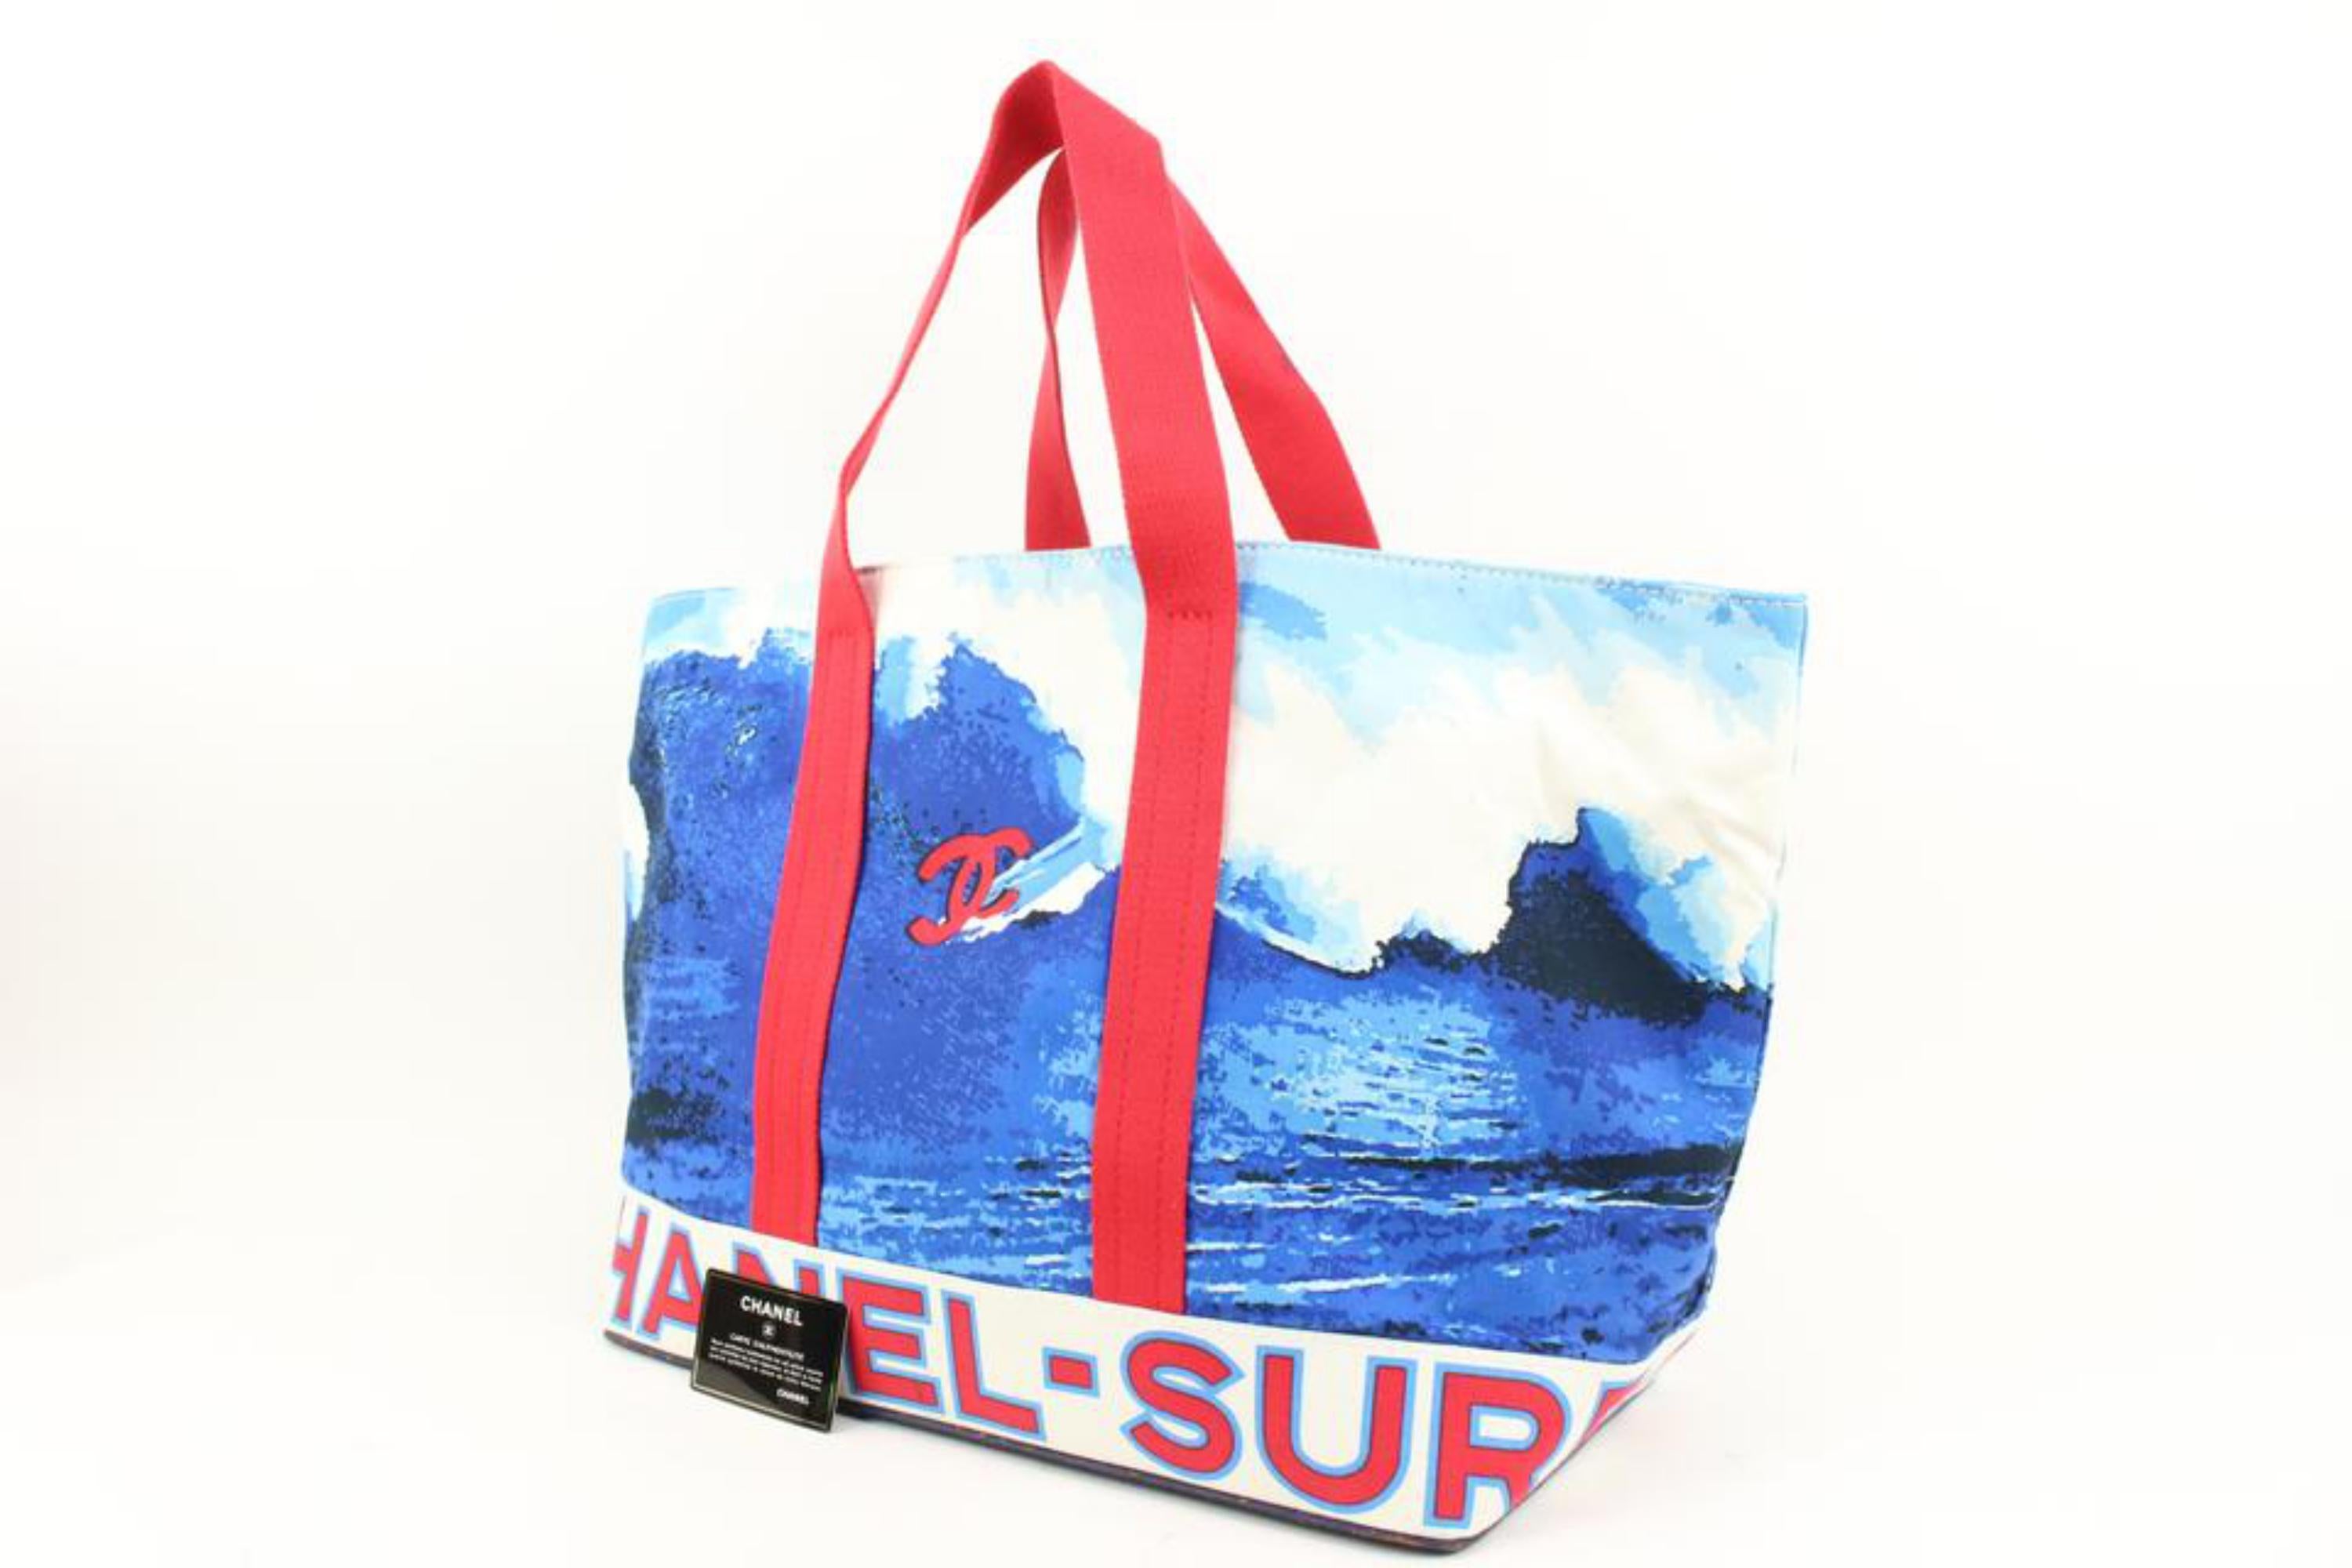 Chanel Surf Bag - 4 For Sale on 1stDibs